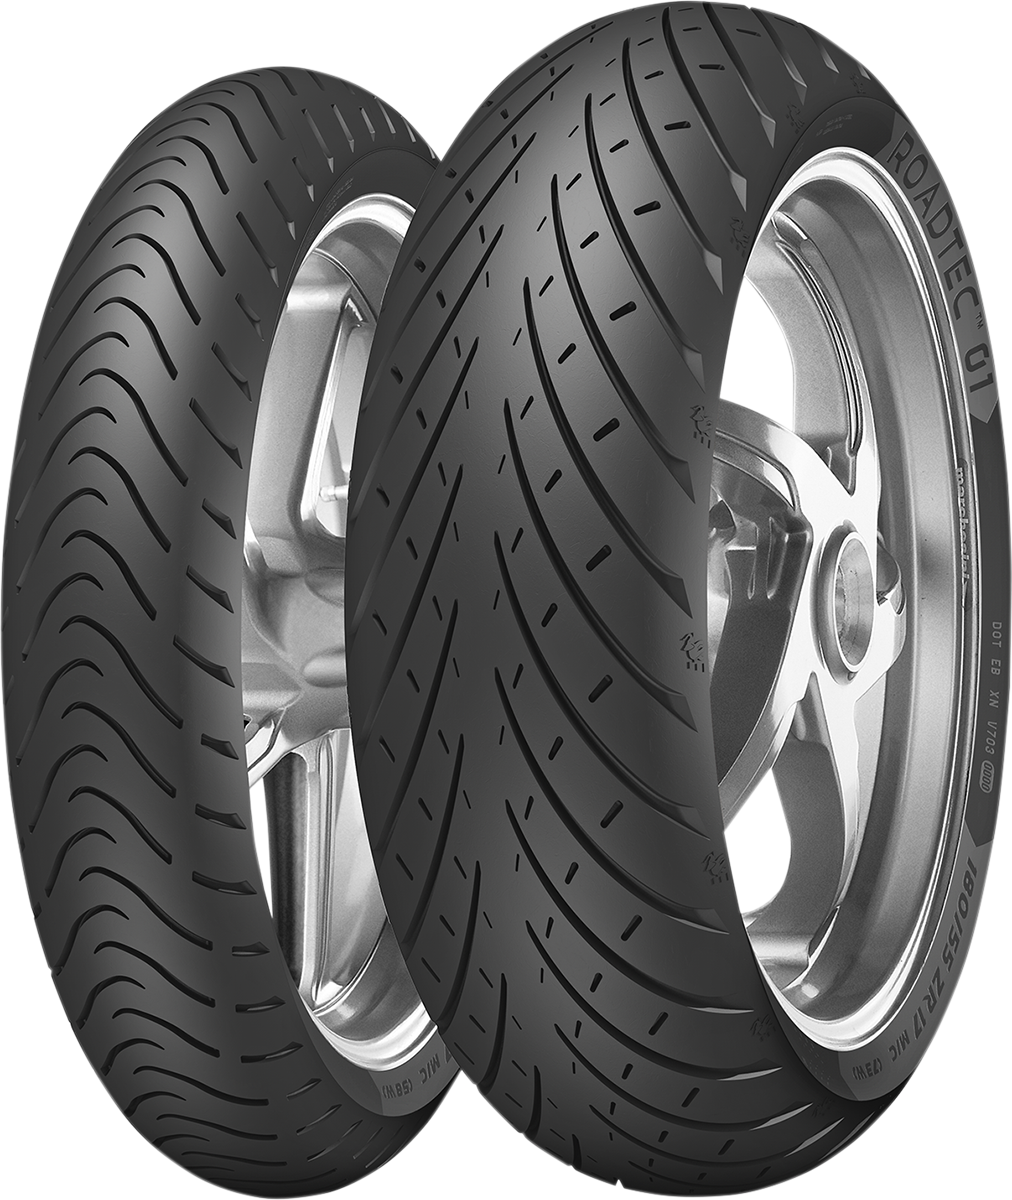 METZELER Tire - Roadtec* 01 - Front - 110/70-17 - 54H 3132400